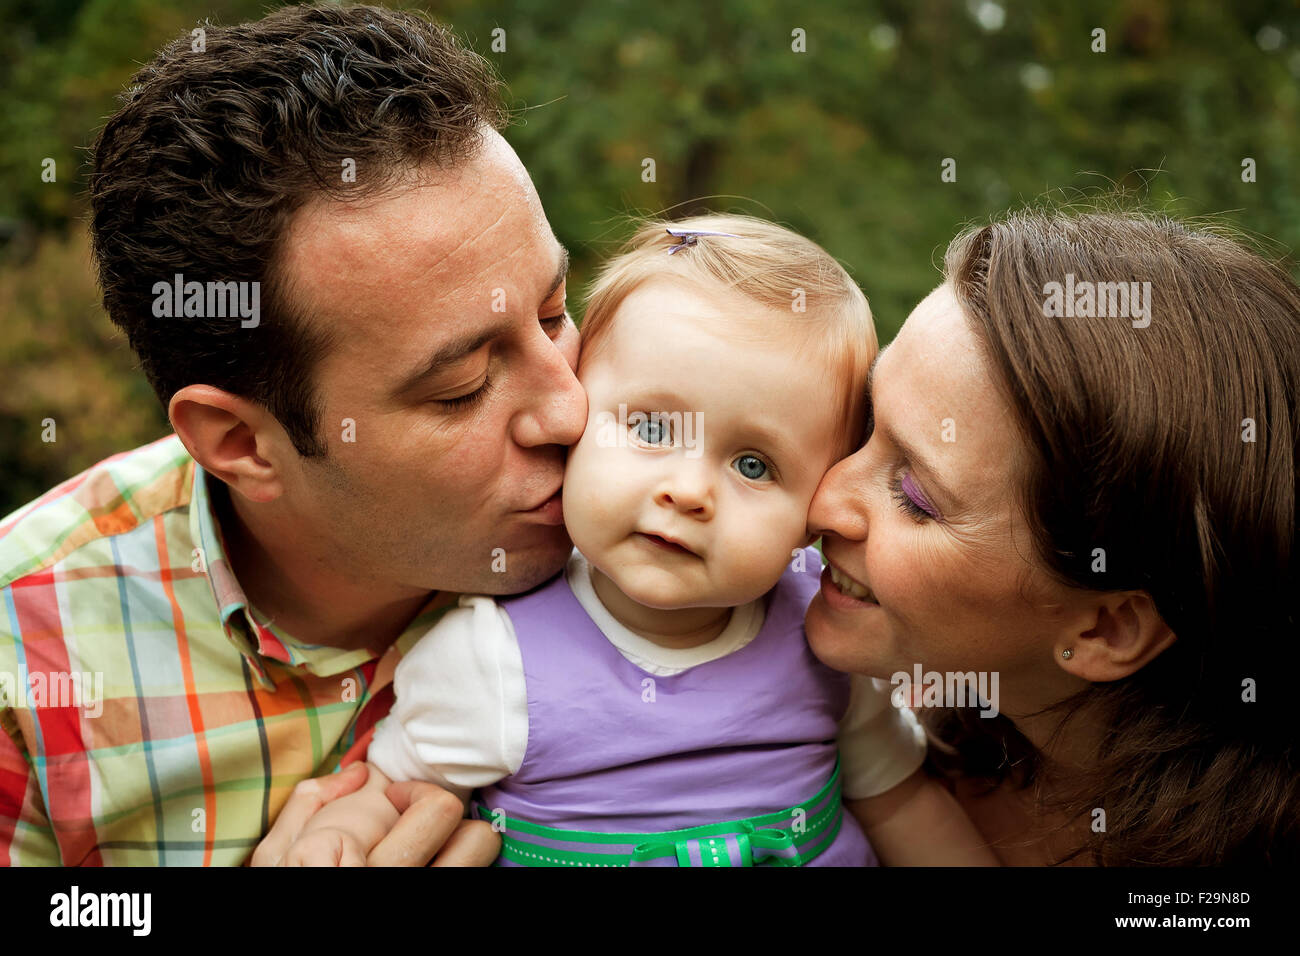 Мама папа поцелуй. Kiss и родители. Традиция поцелуев в семье с ребенком. Поцелуй родителя и ребенка в Англии. Фото семья поцелуи.